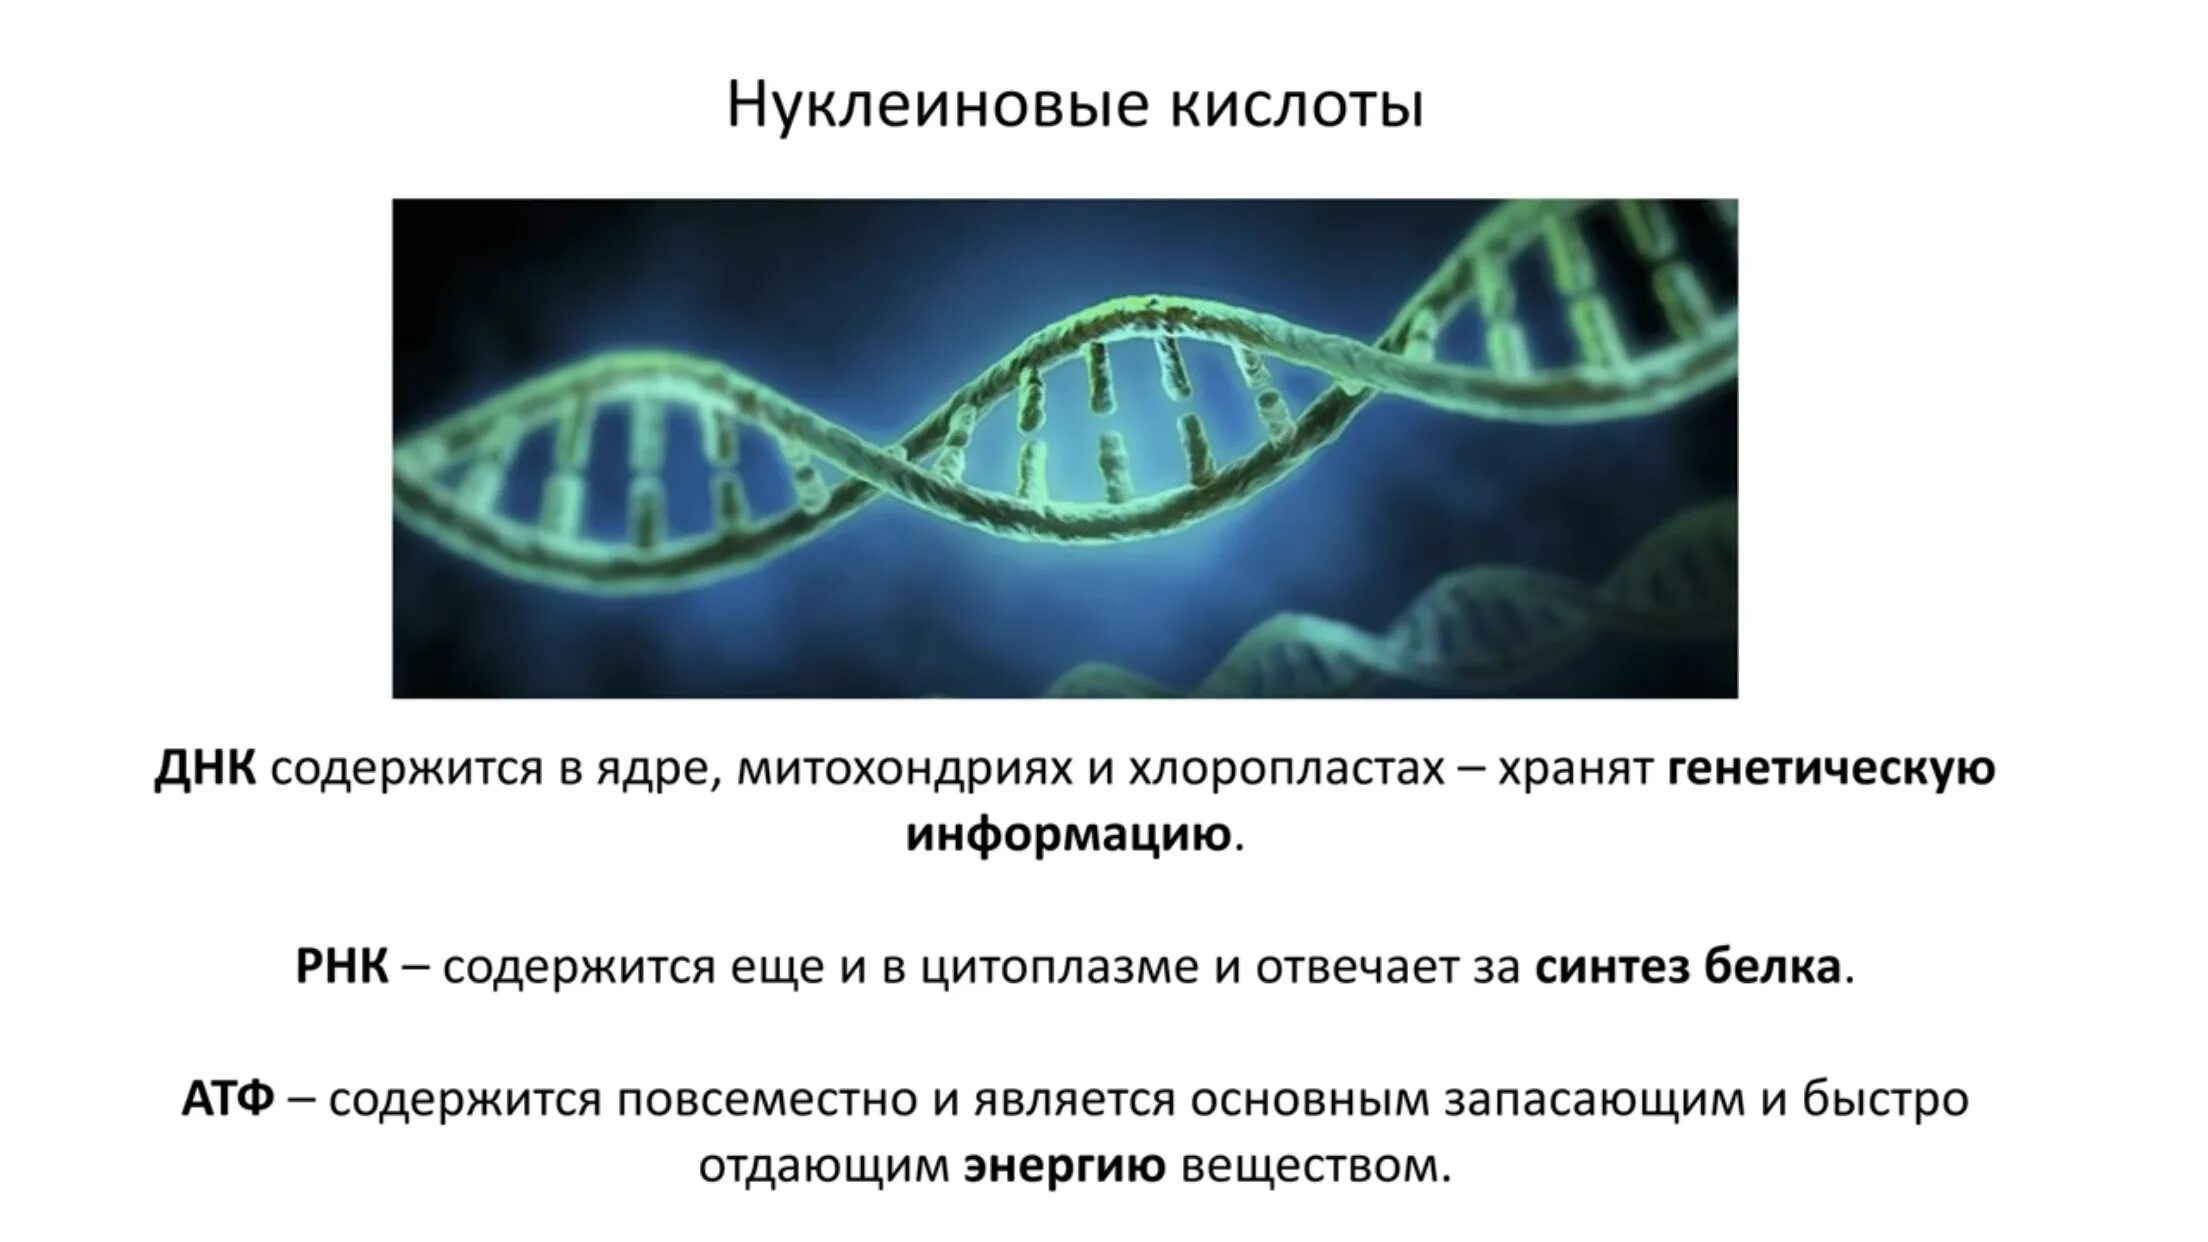 Кольцевая днк характерна для. Кольцевая ДНК В хлоропластах. В ядре содержатся нуклеиновые кислоты.